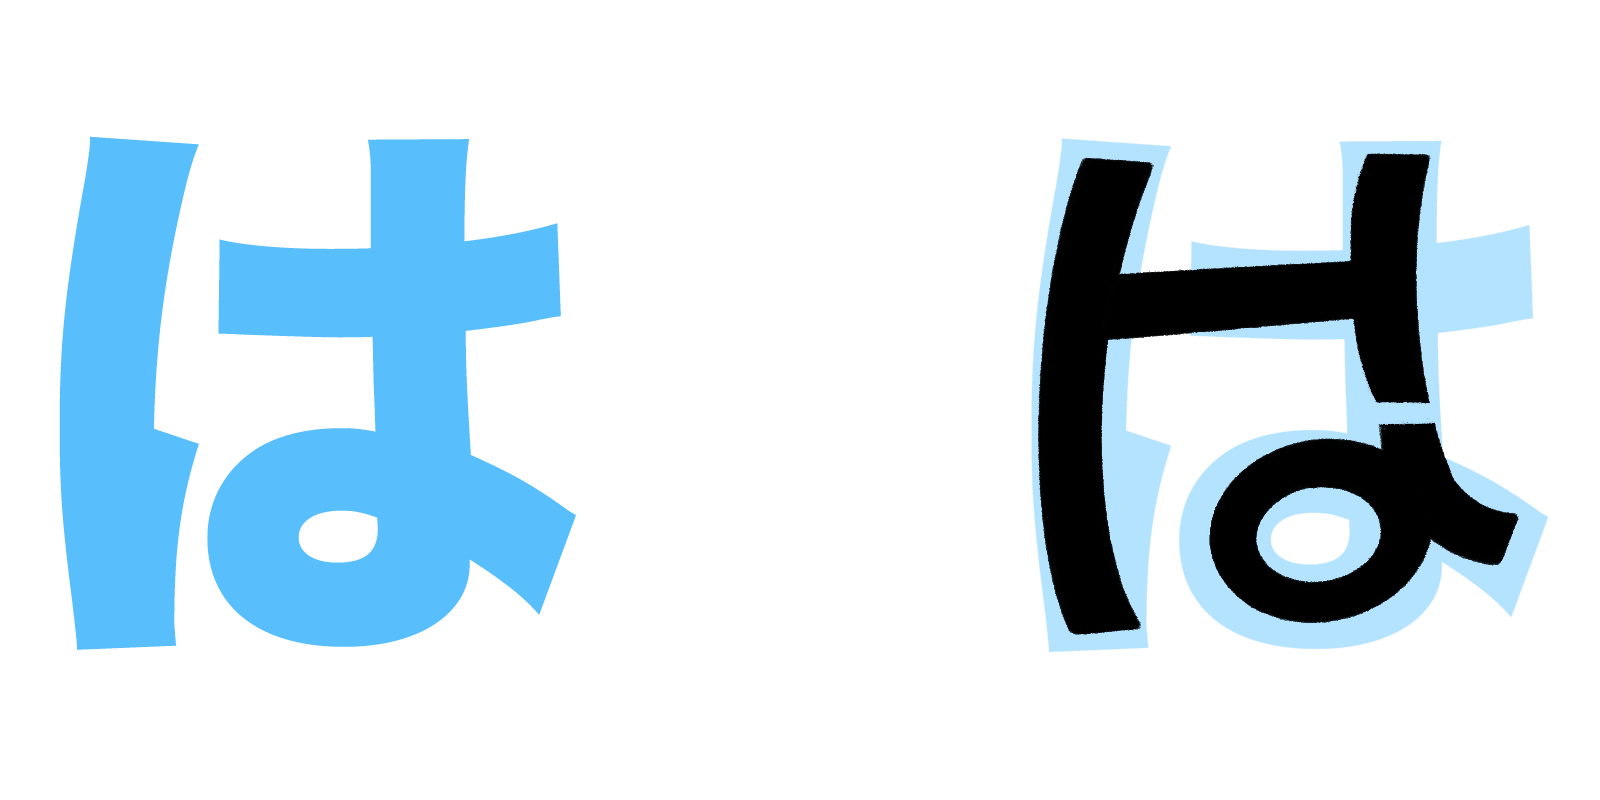 は hiragana mnemonic